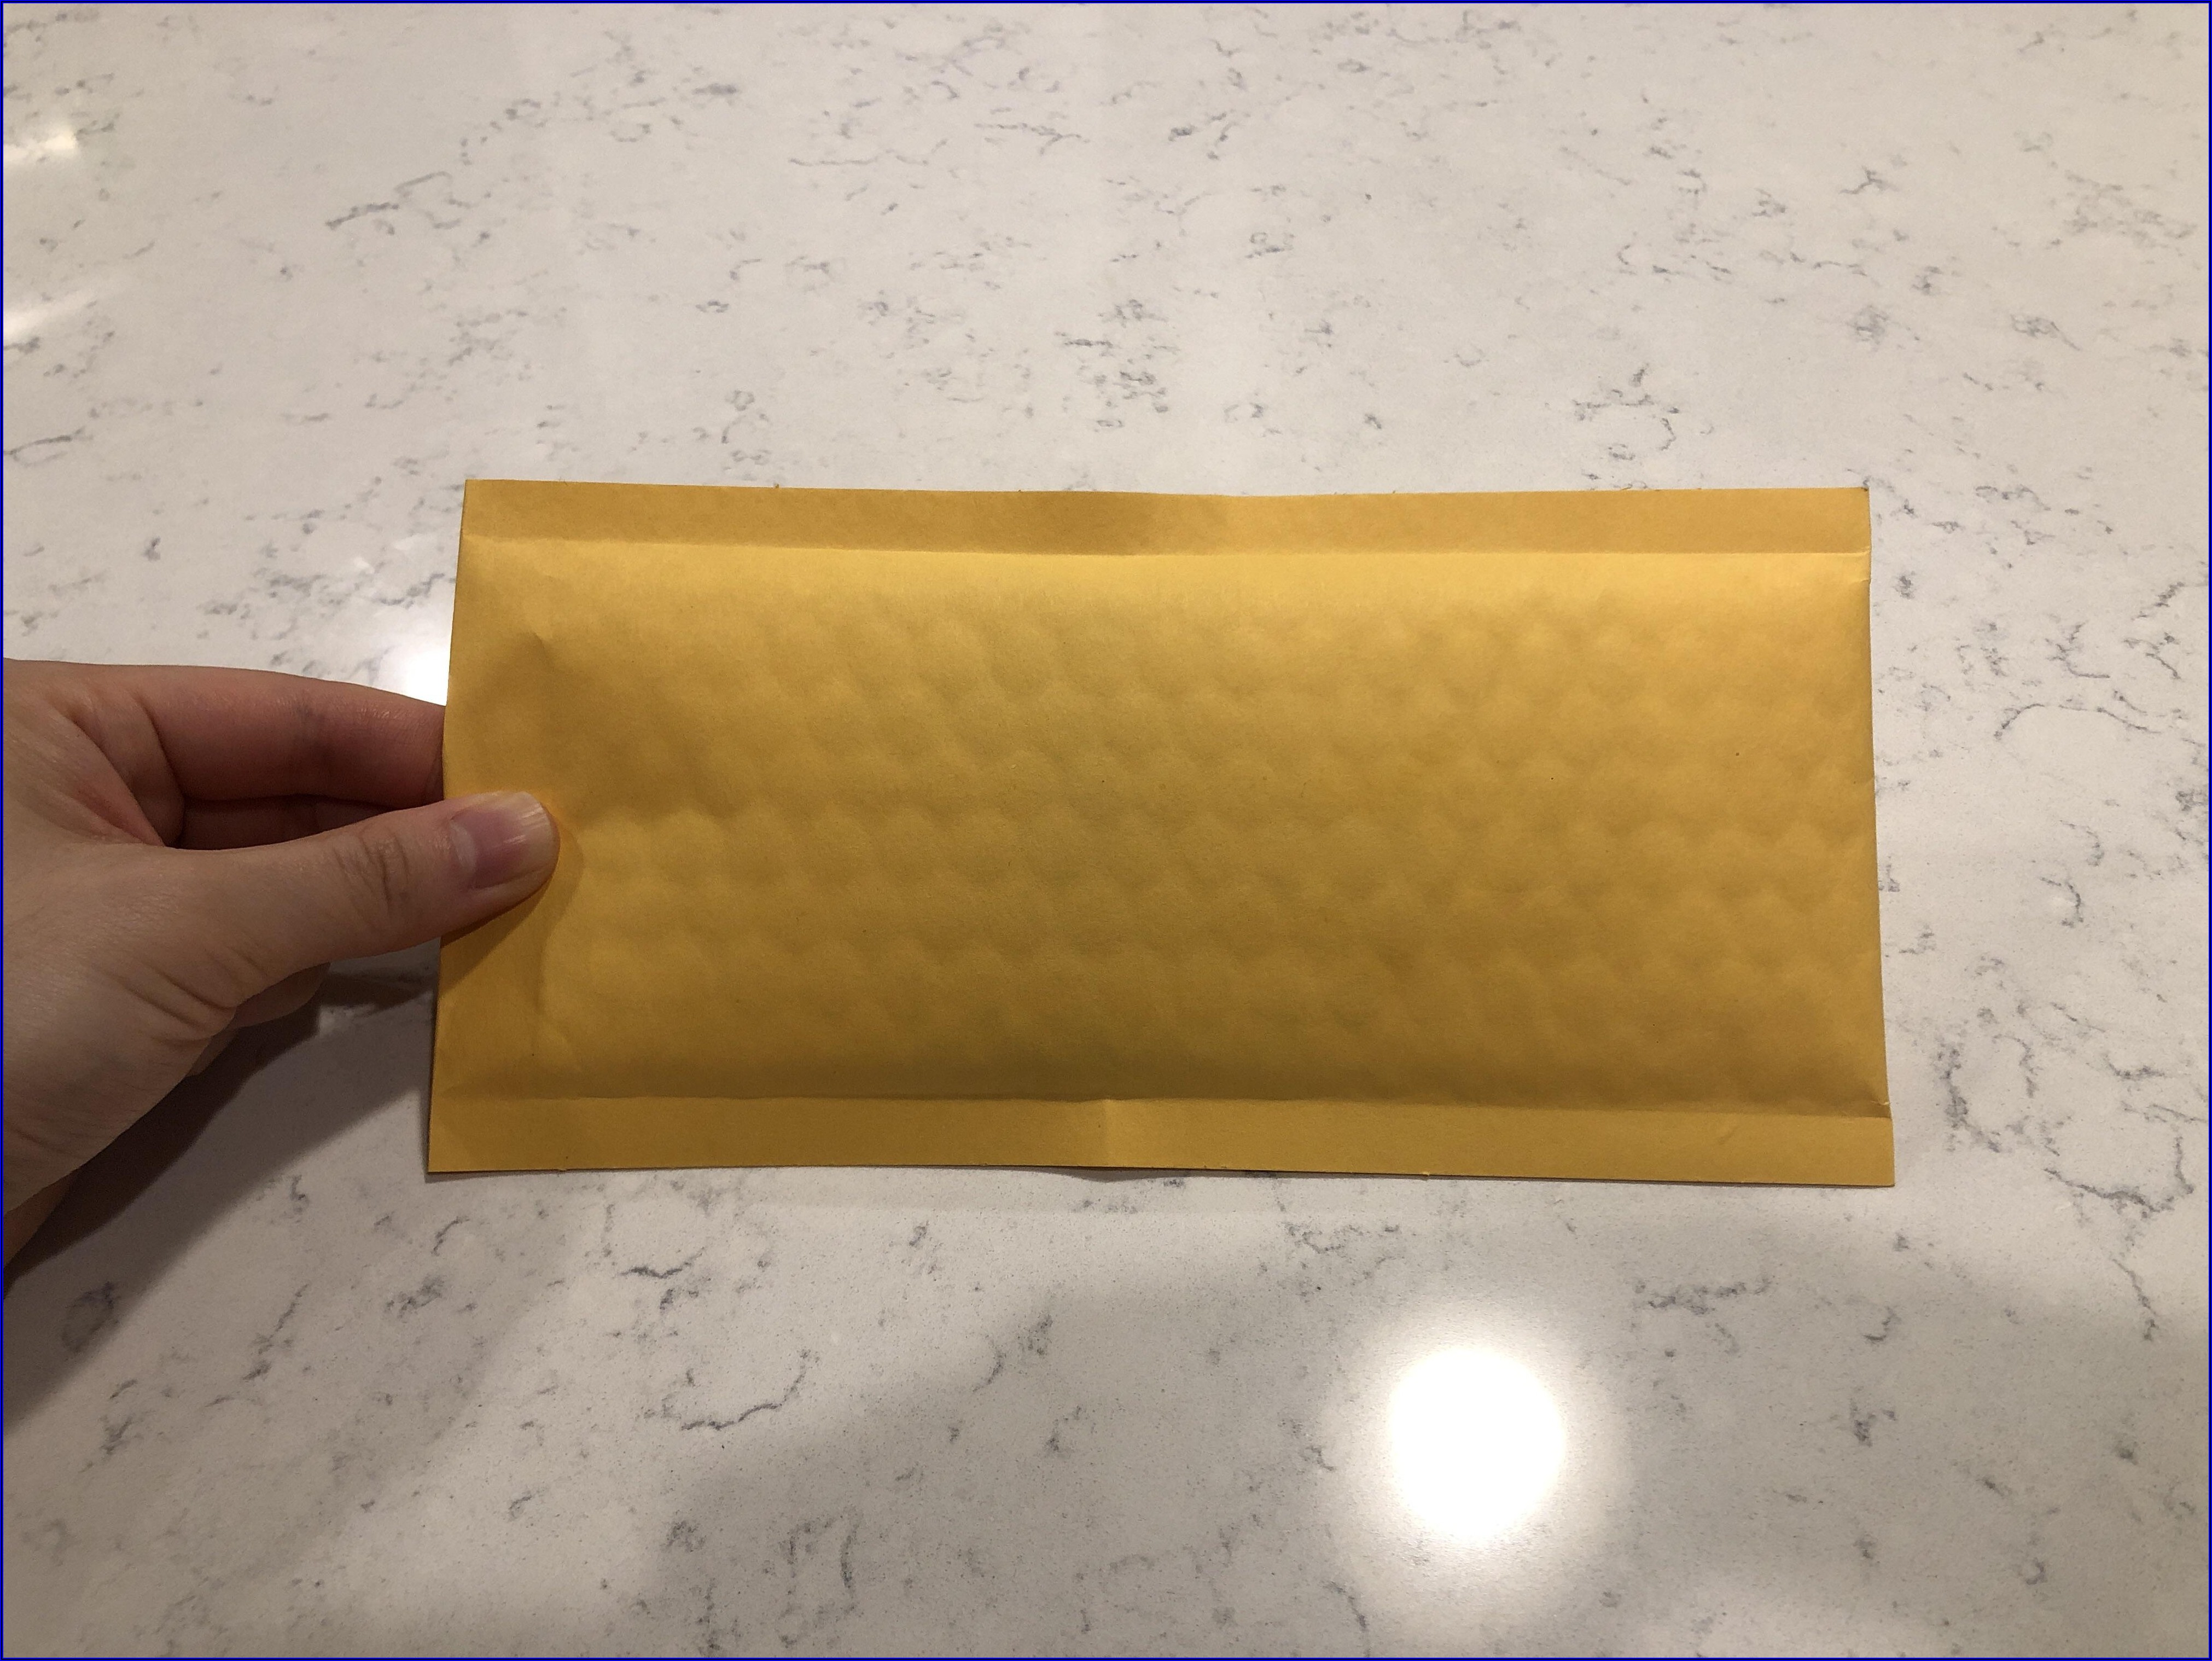 Usps Postage For 5x7 Envelope